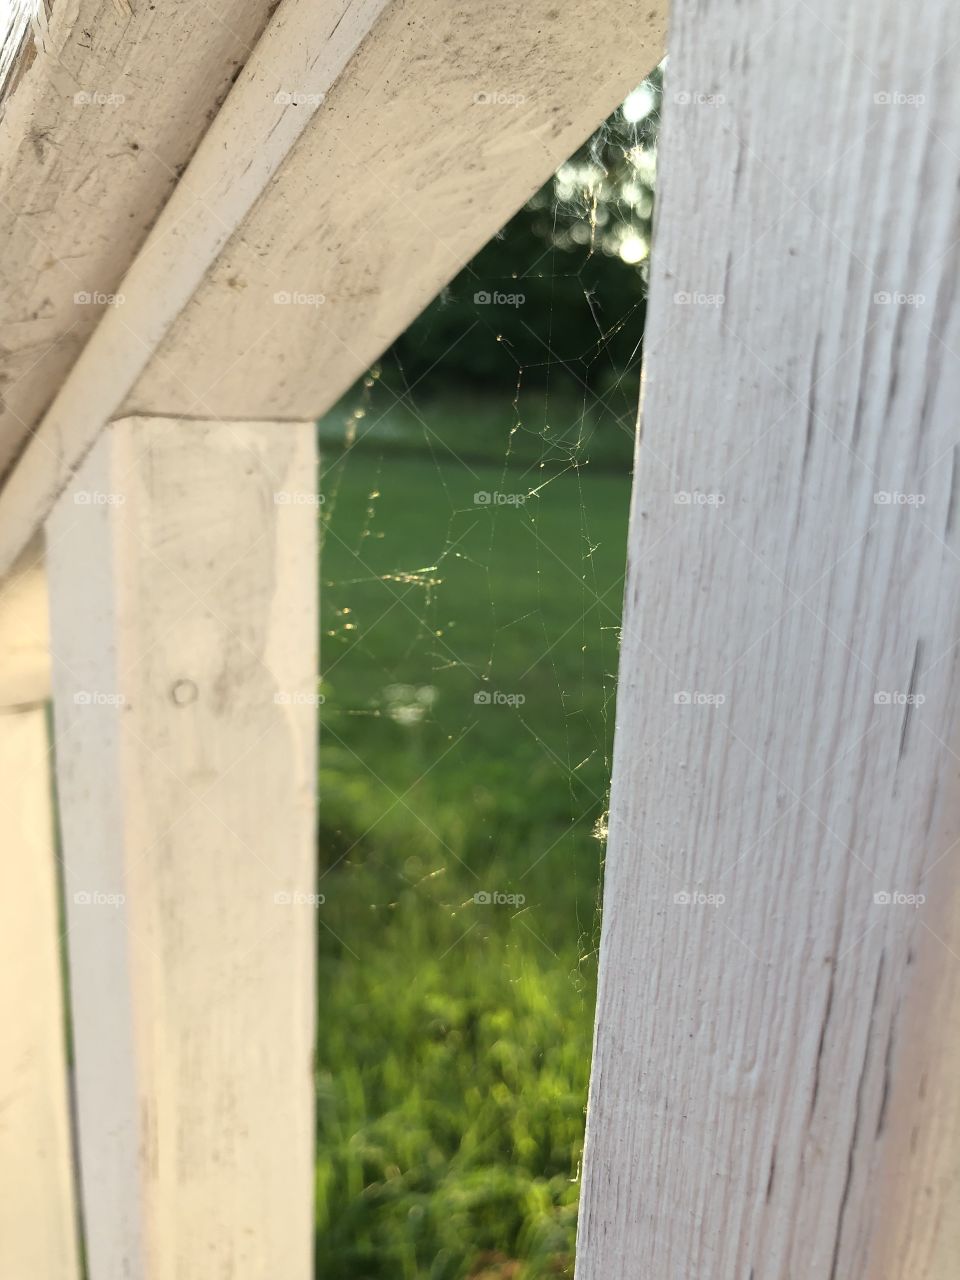 Secret spider web revealed in the sunlight